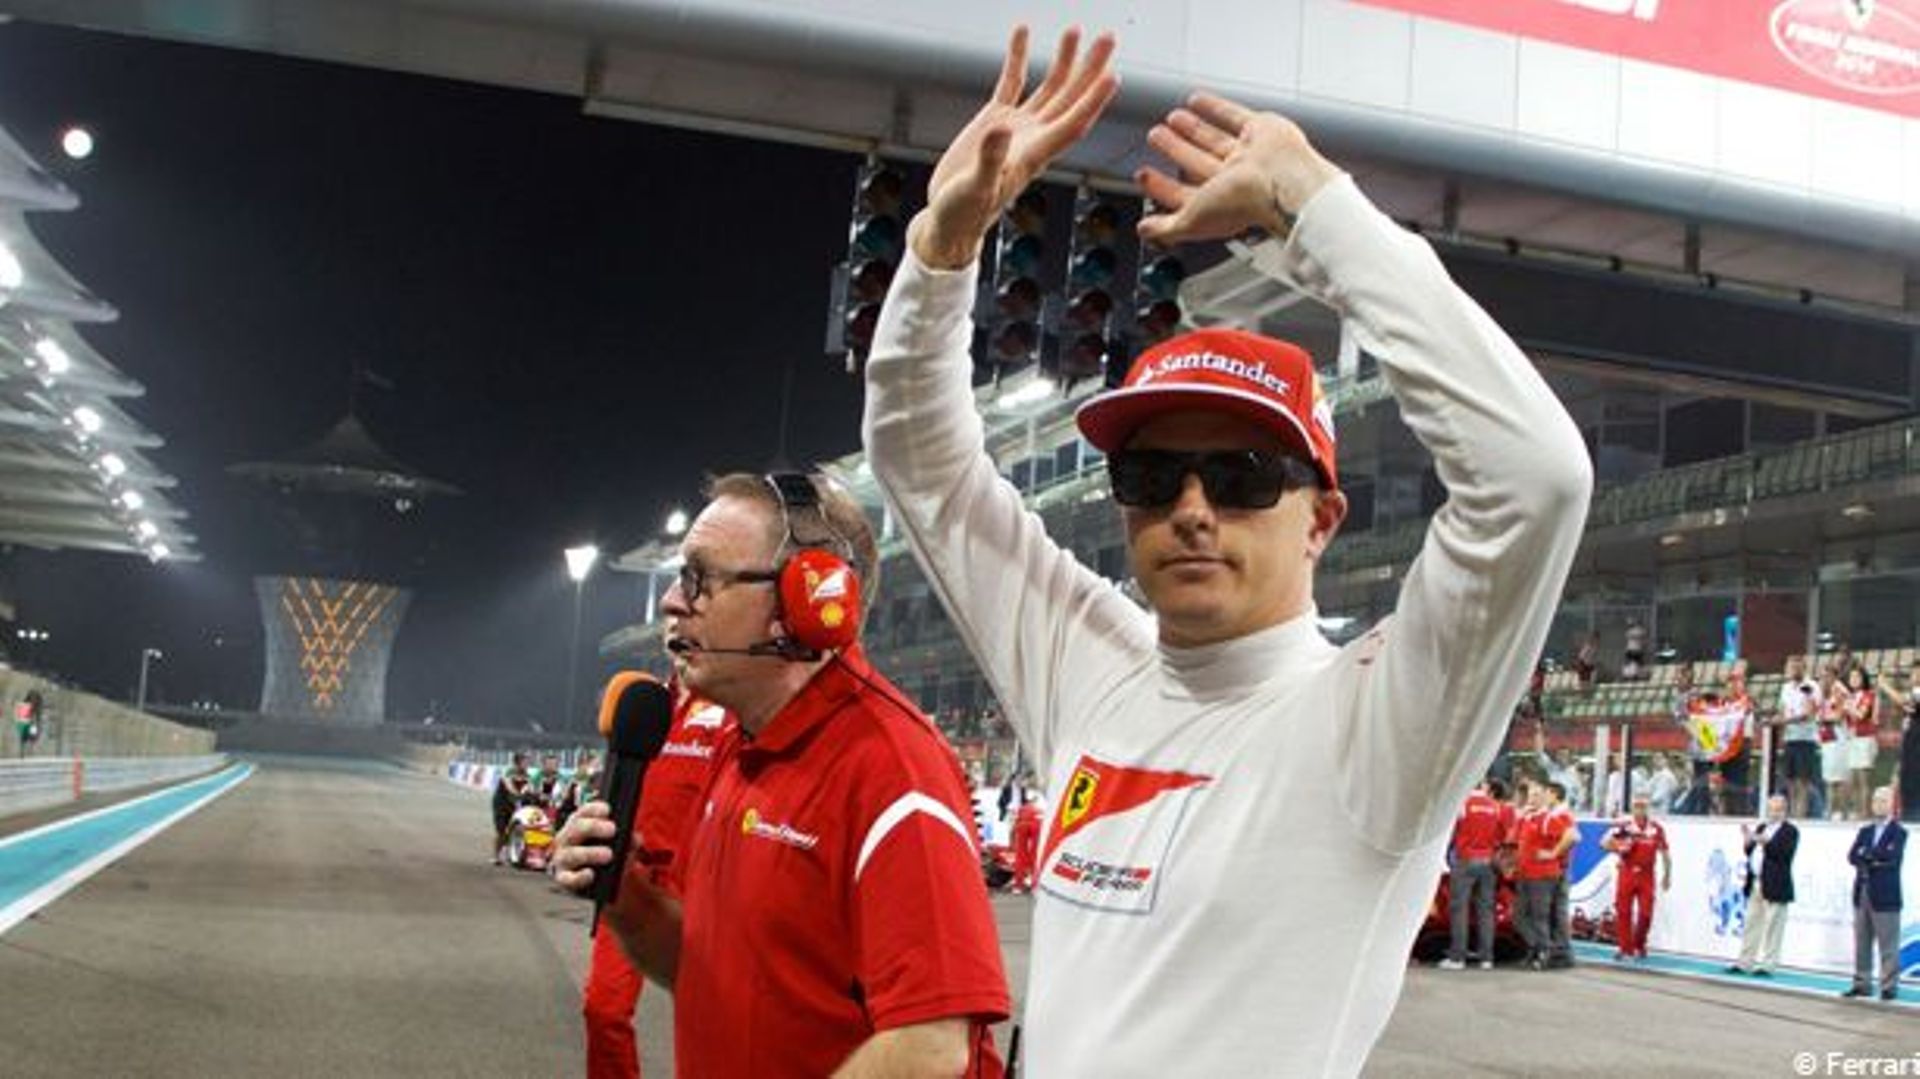 Räikkönen : "Travailler avec l'unité qui caractérise Ferrari"